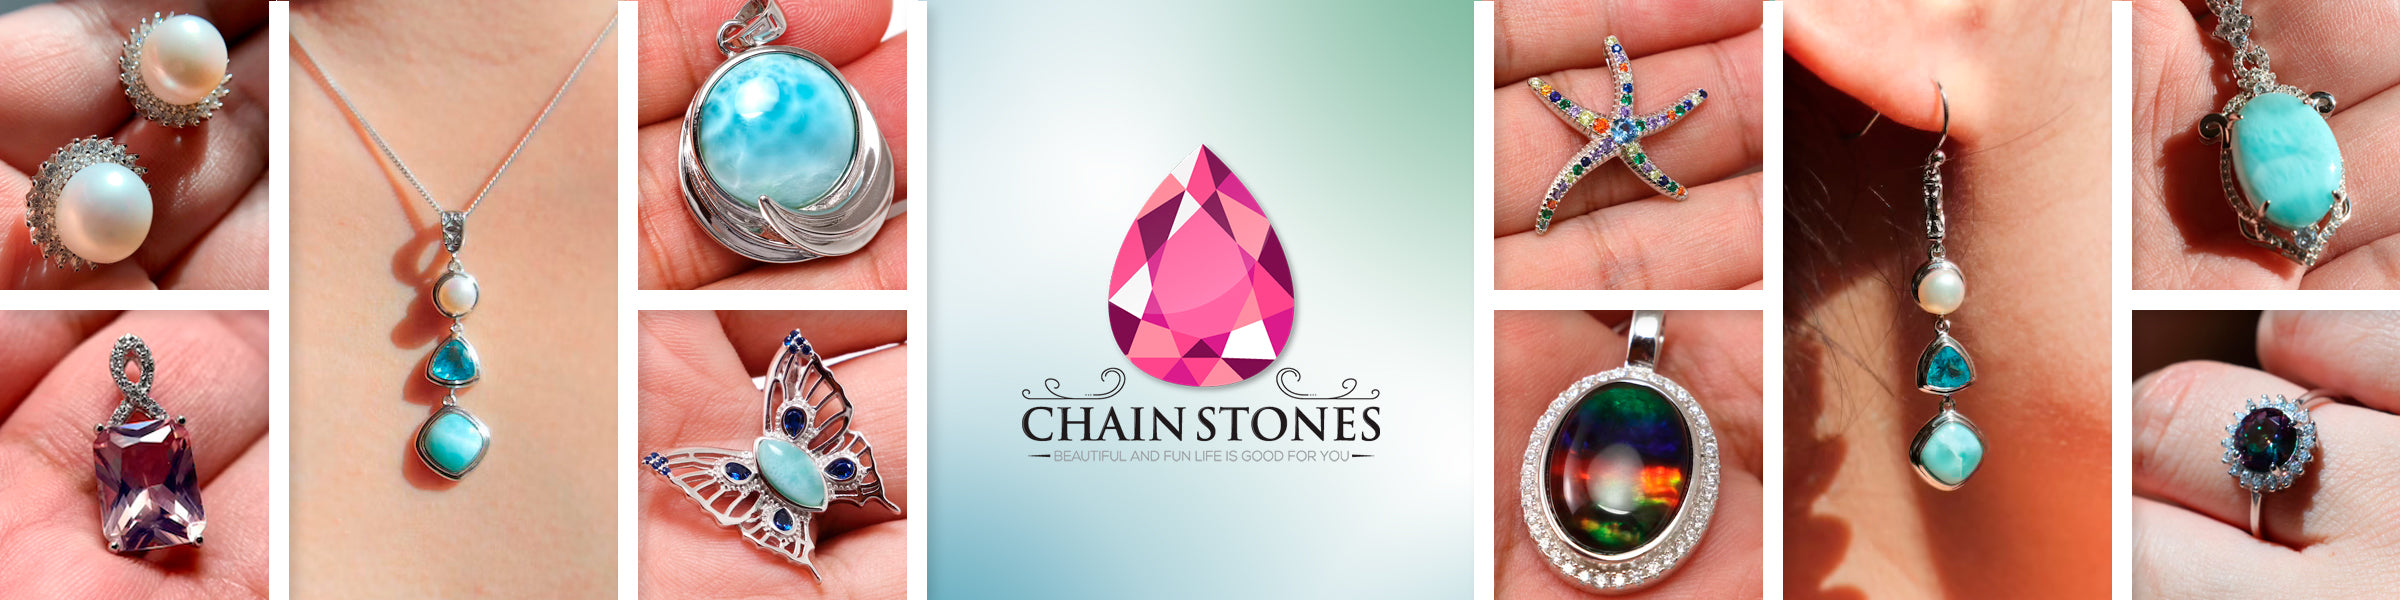 Chain Stones